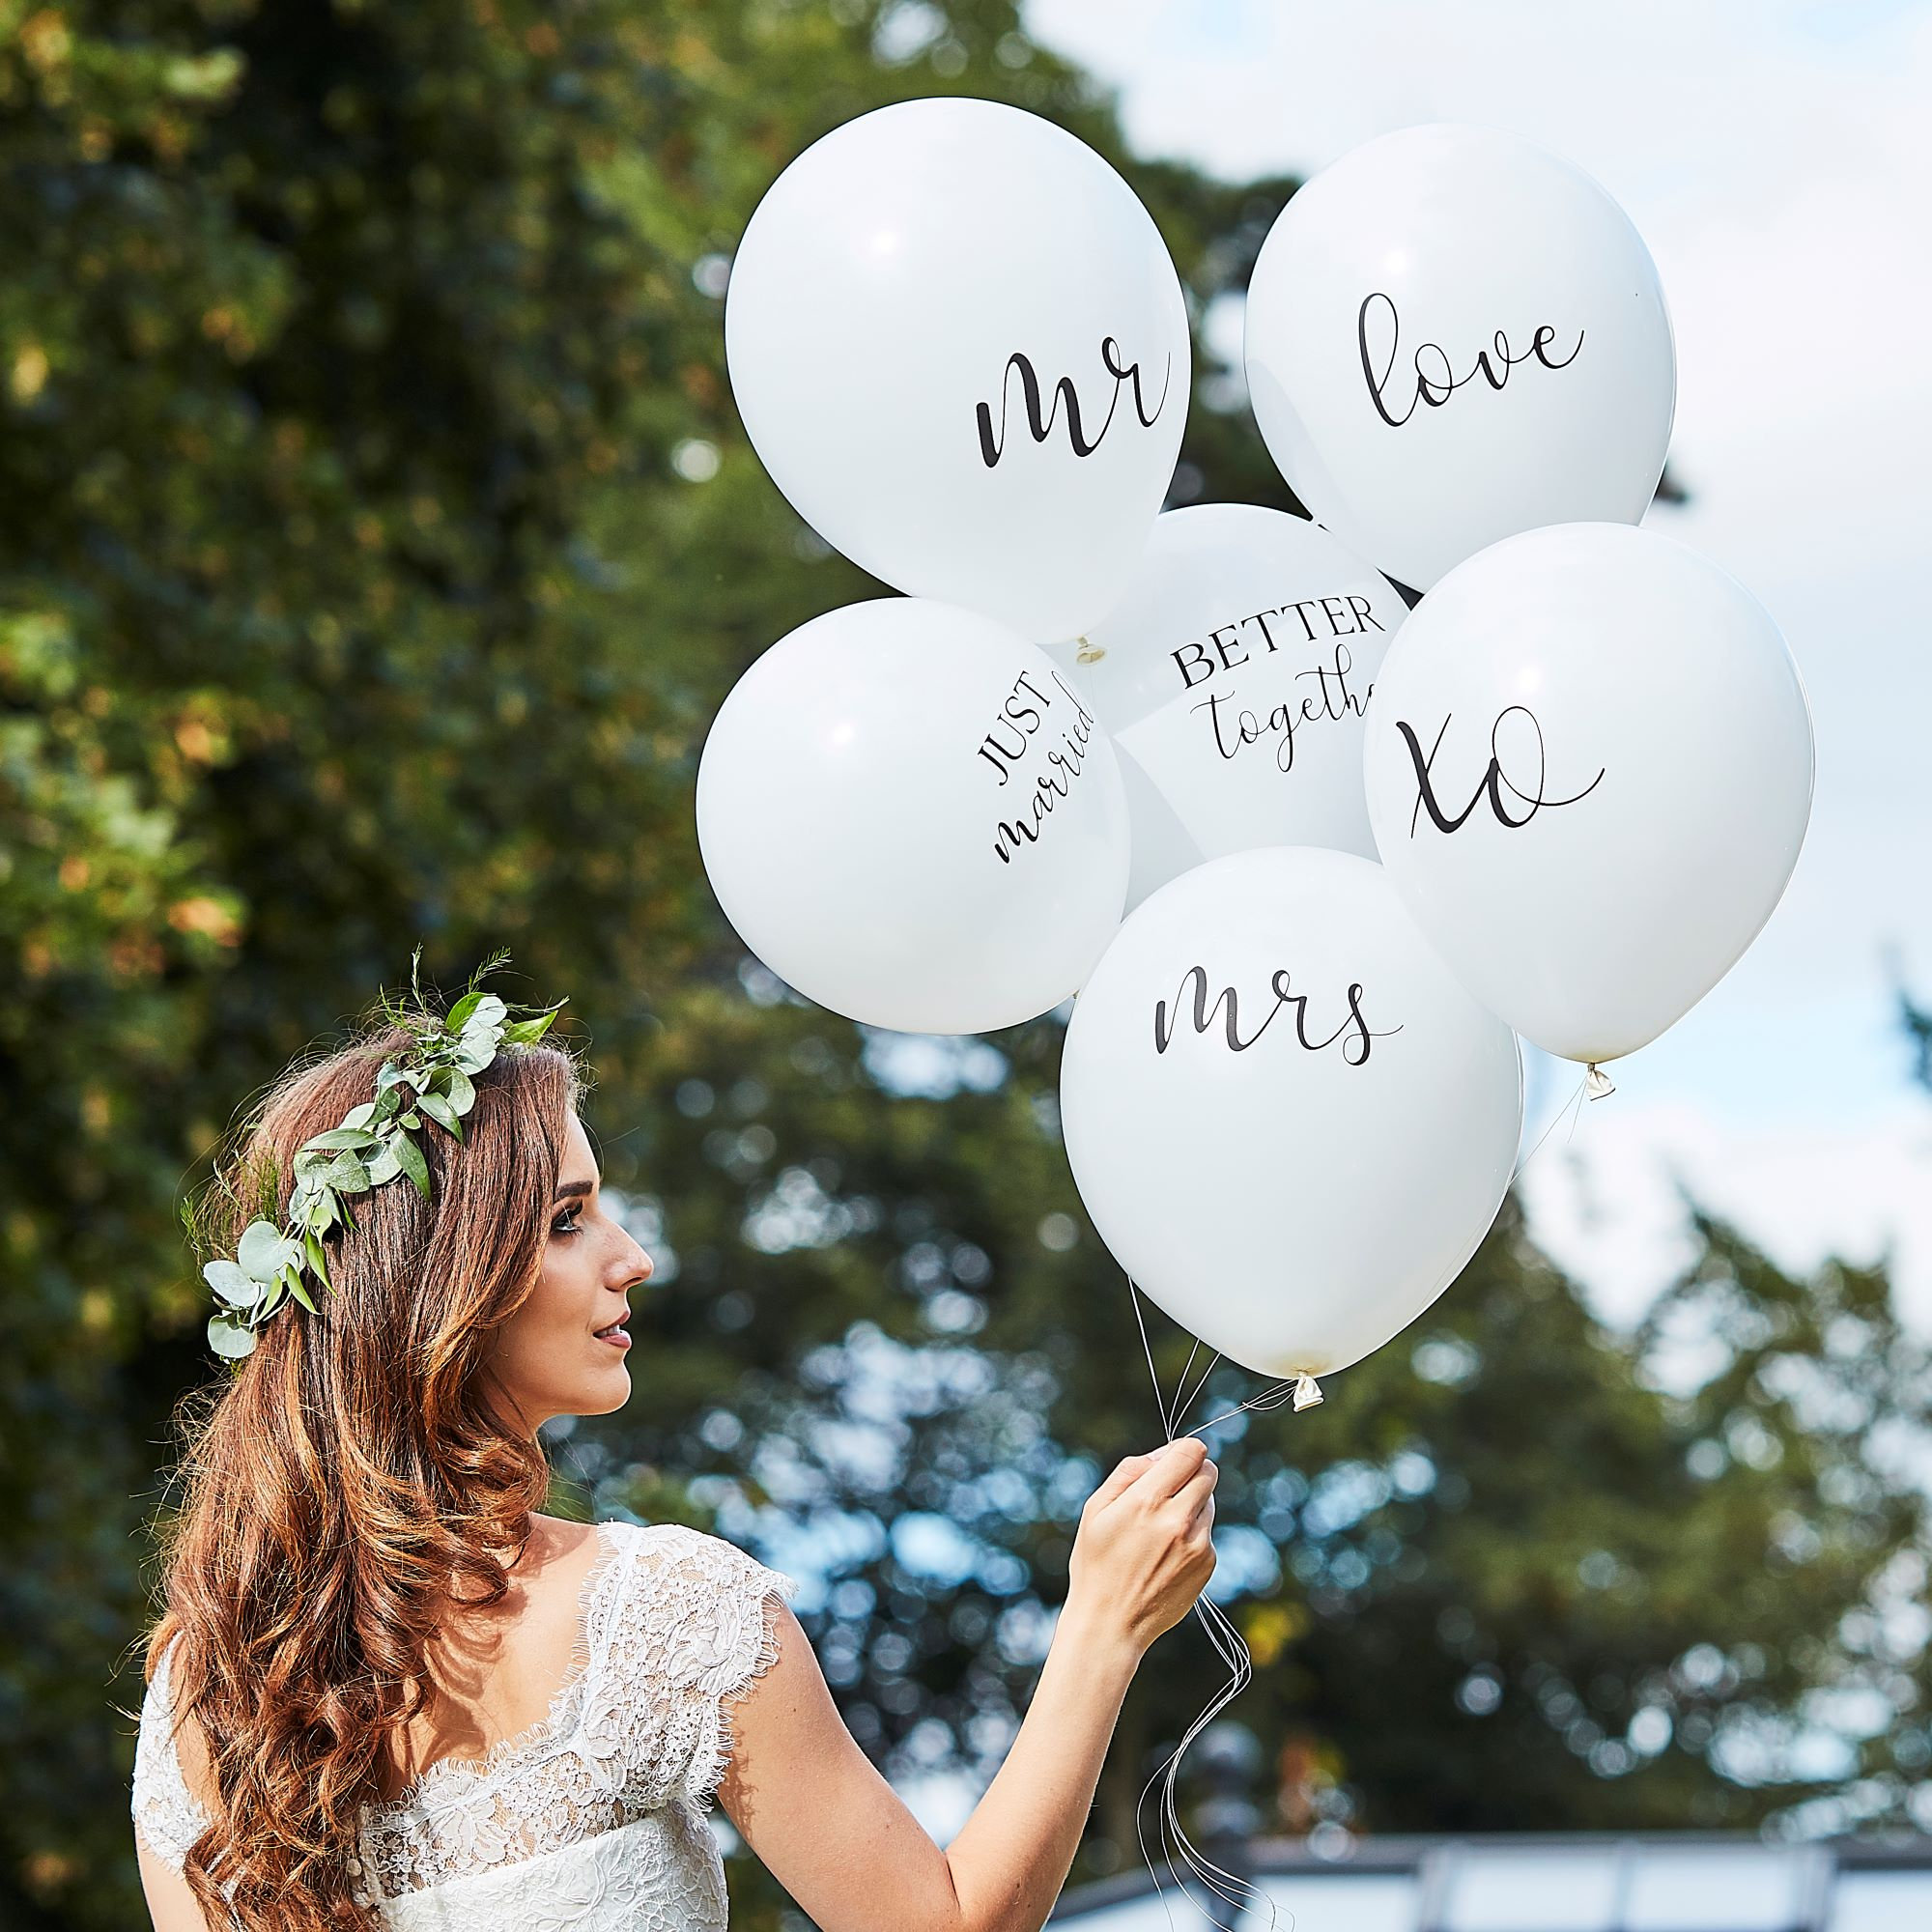 Kaufe JUST MARRIED Hochzeits-Luftschlange aus Pappe, Dekoration für  Fotografie, Hochzeit, Party